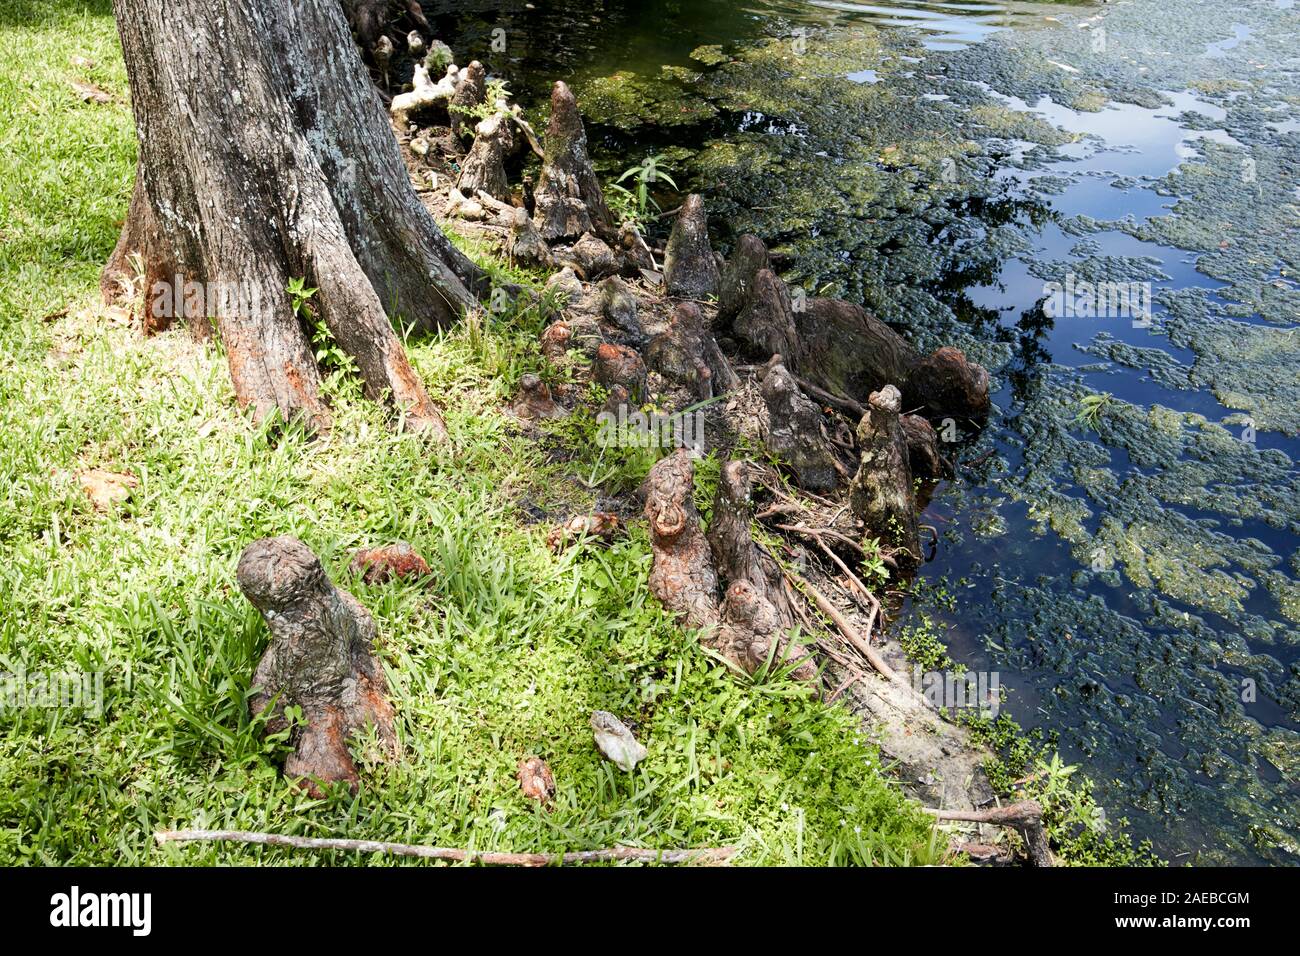 Wurzeln der Swamp Cypress in der Nähe von Wasser, Knien oder pneumatophores über Boden kissimmee Florida USA Stockfoto